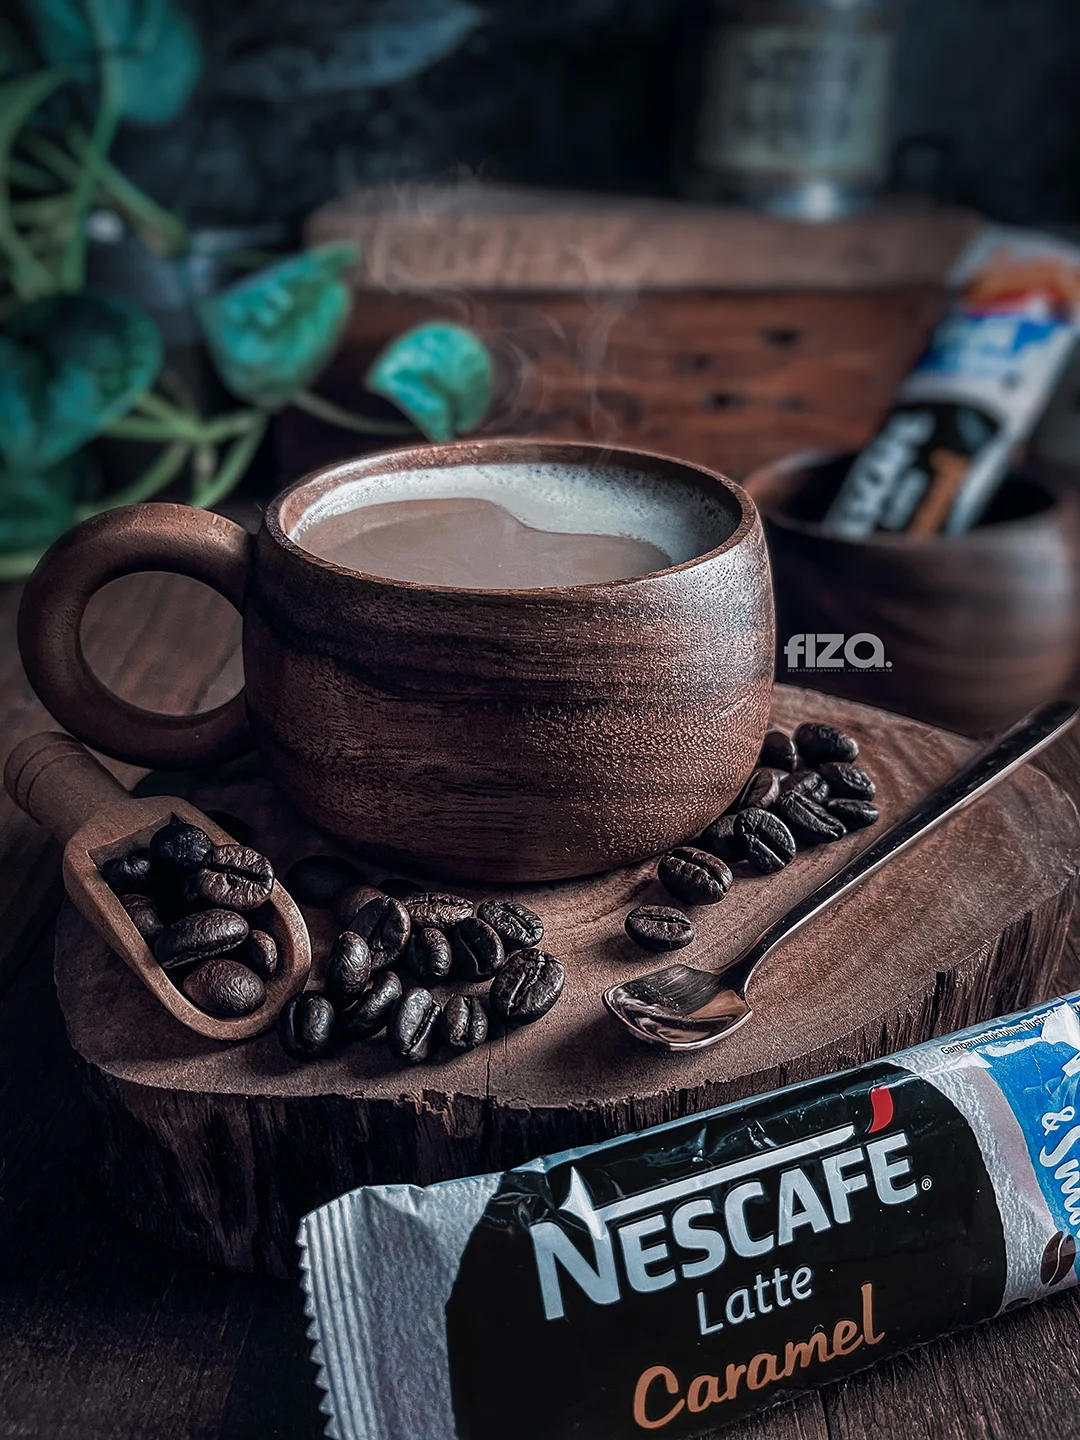 Nescafe Latte Caramel